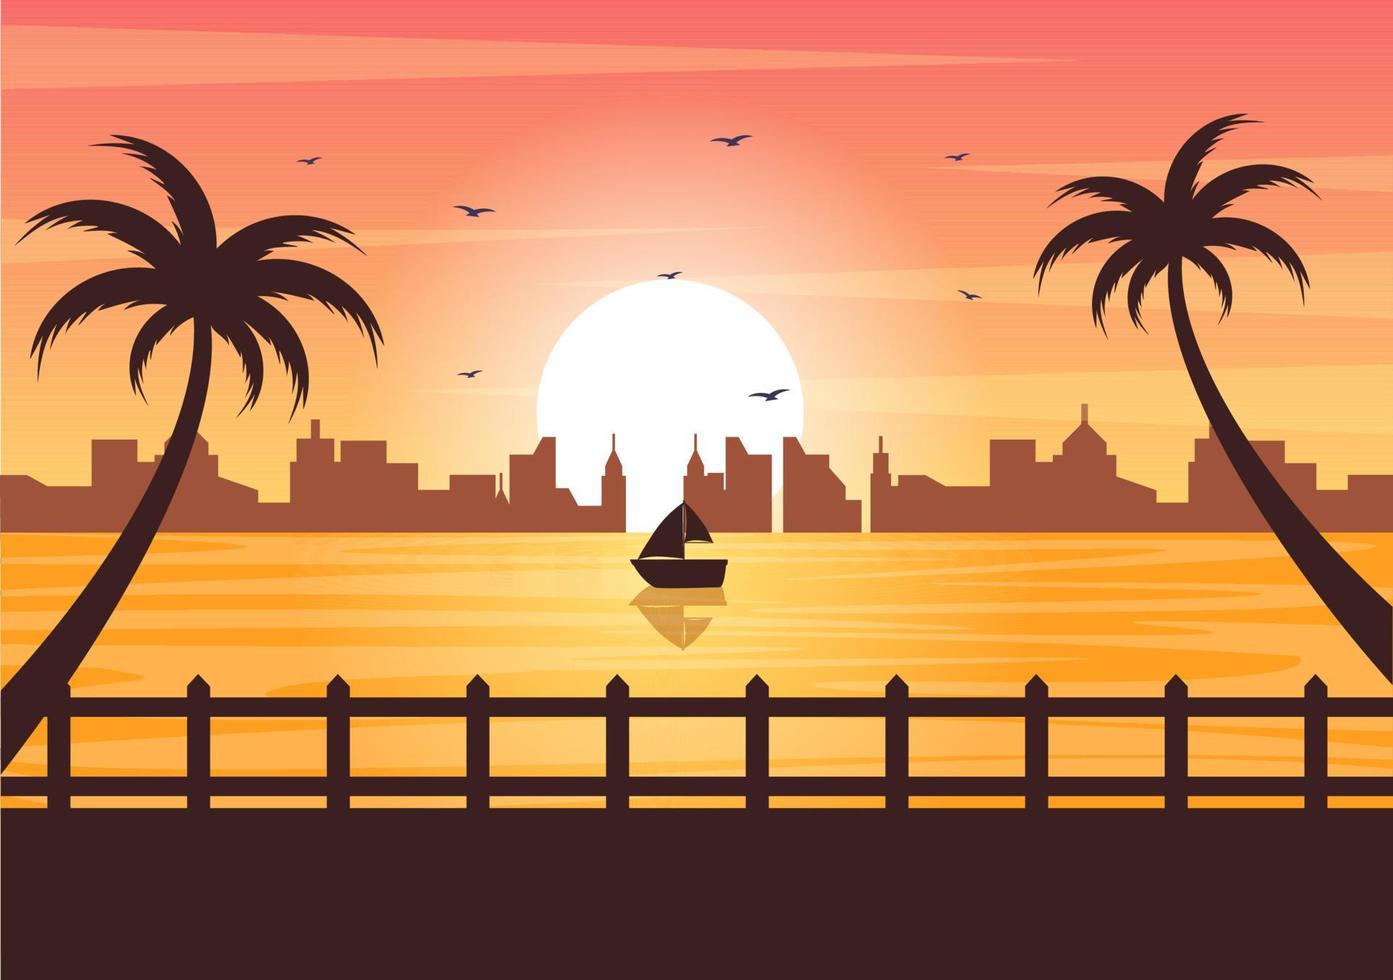 paisagem do pôr do sol do mar do sol acima do oceano com nuvens, superfície da água, palmeira e praia em ilustração de fundo plano para cartaz, banner ou plano de fundo vetor